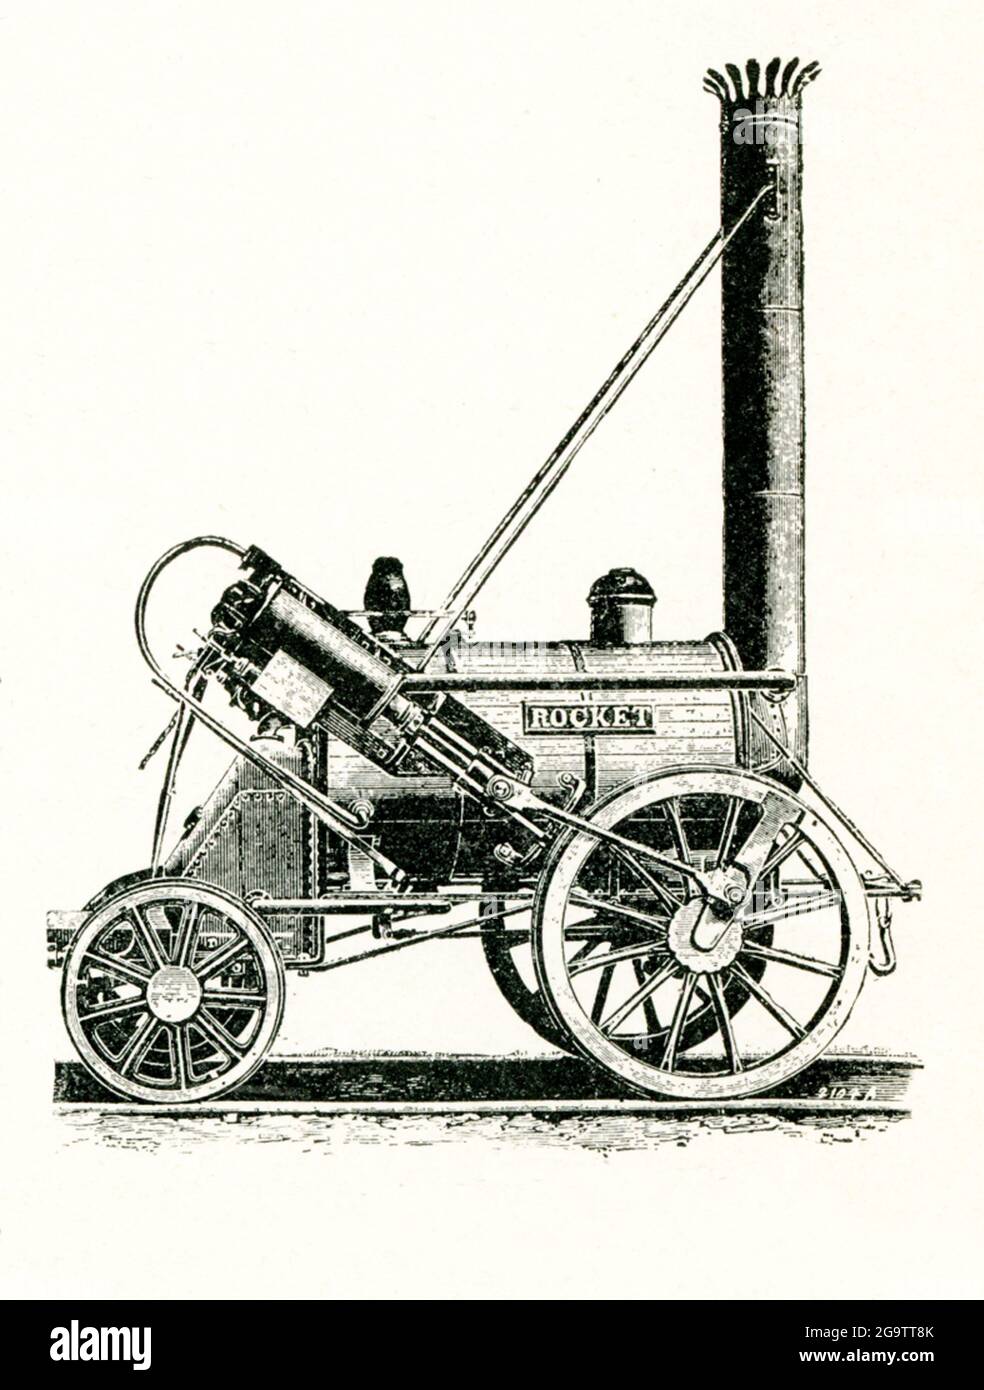 Die von Robert Stephenson gebaute Raketenlokomotive. Die 'Rocket', die hier in dieser Gravur von 1901 gezeigt wurde, war die erste moderne Dampflokomotive. Es wurde 1829 in Newcastle, England, von George Stephenson, der als "Vater der Eisenbahn" bekannt ist, erbaut. Stockfoto